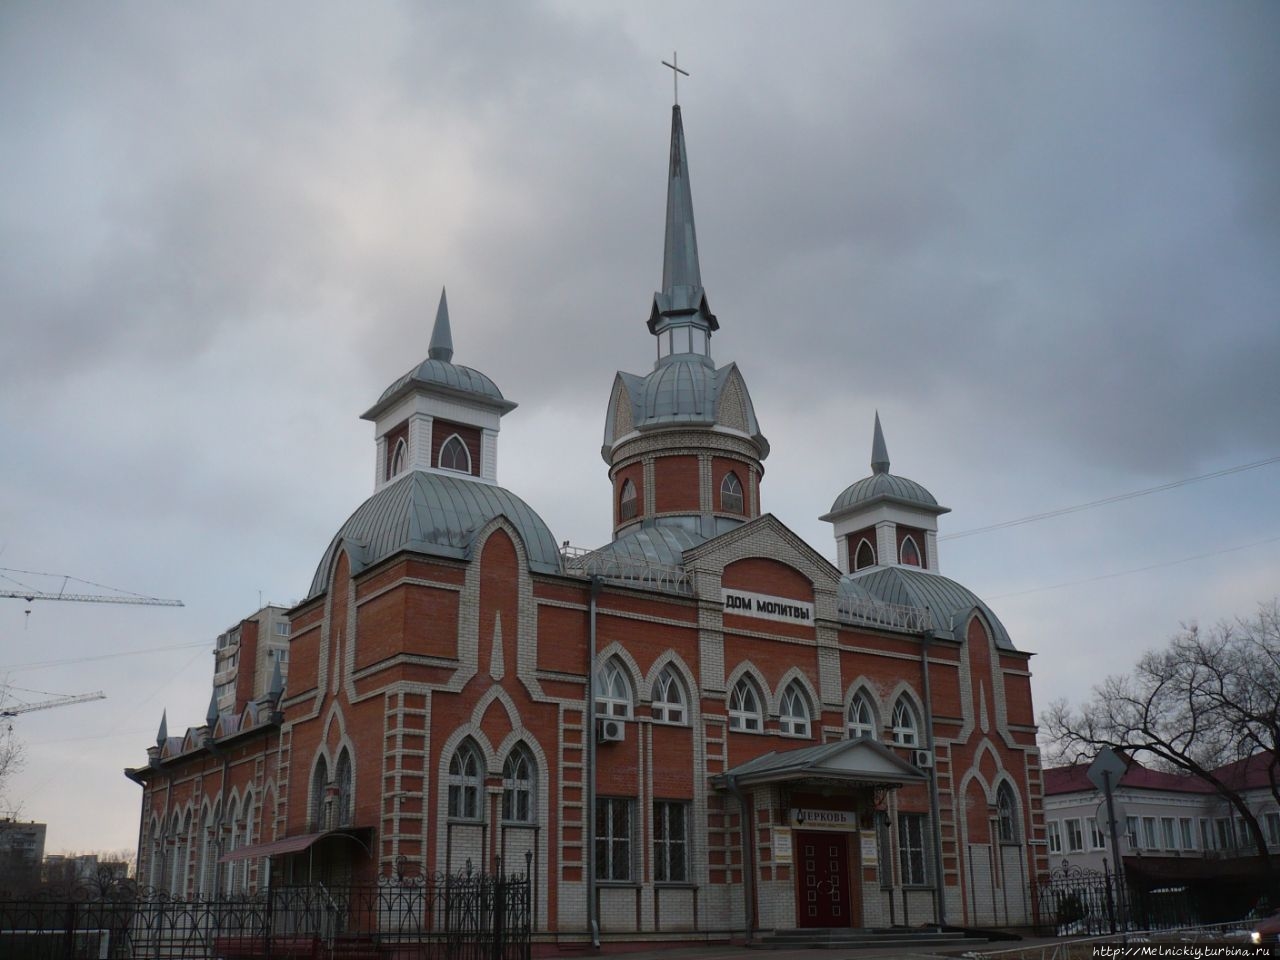 Главная церковь евангельских христиан-баптистов / Main Church of Evangelical Christian Baptists